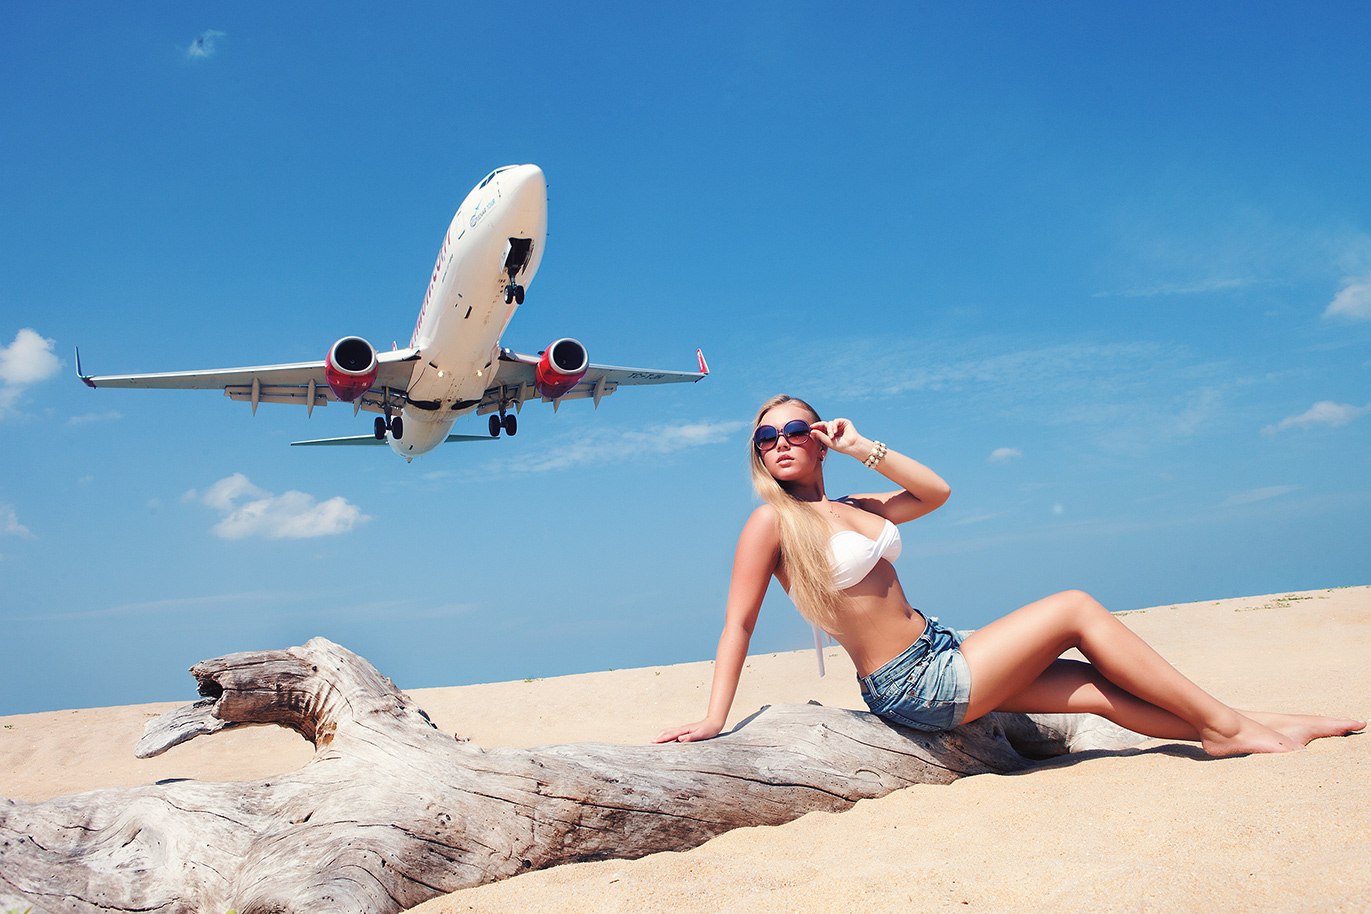 Фото эротика - голая красотка и самолет